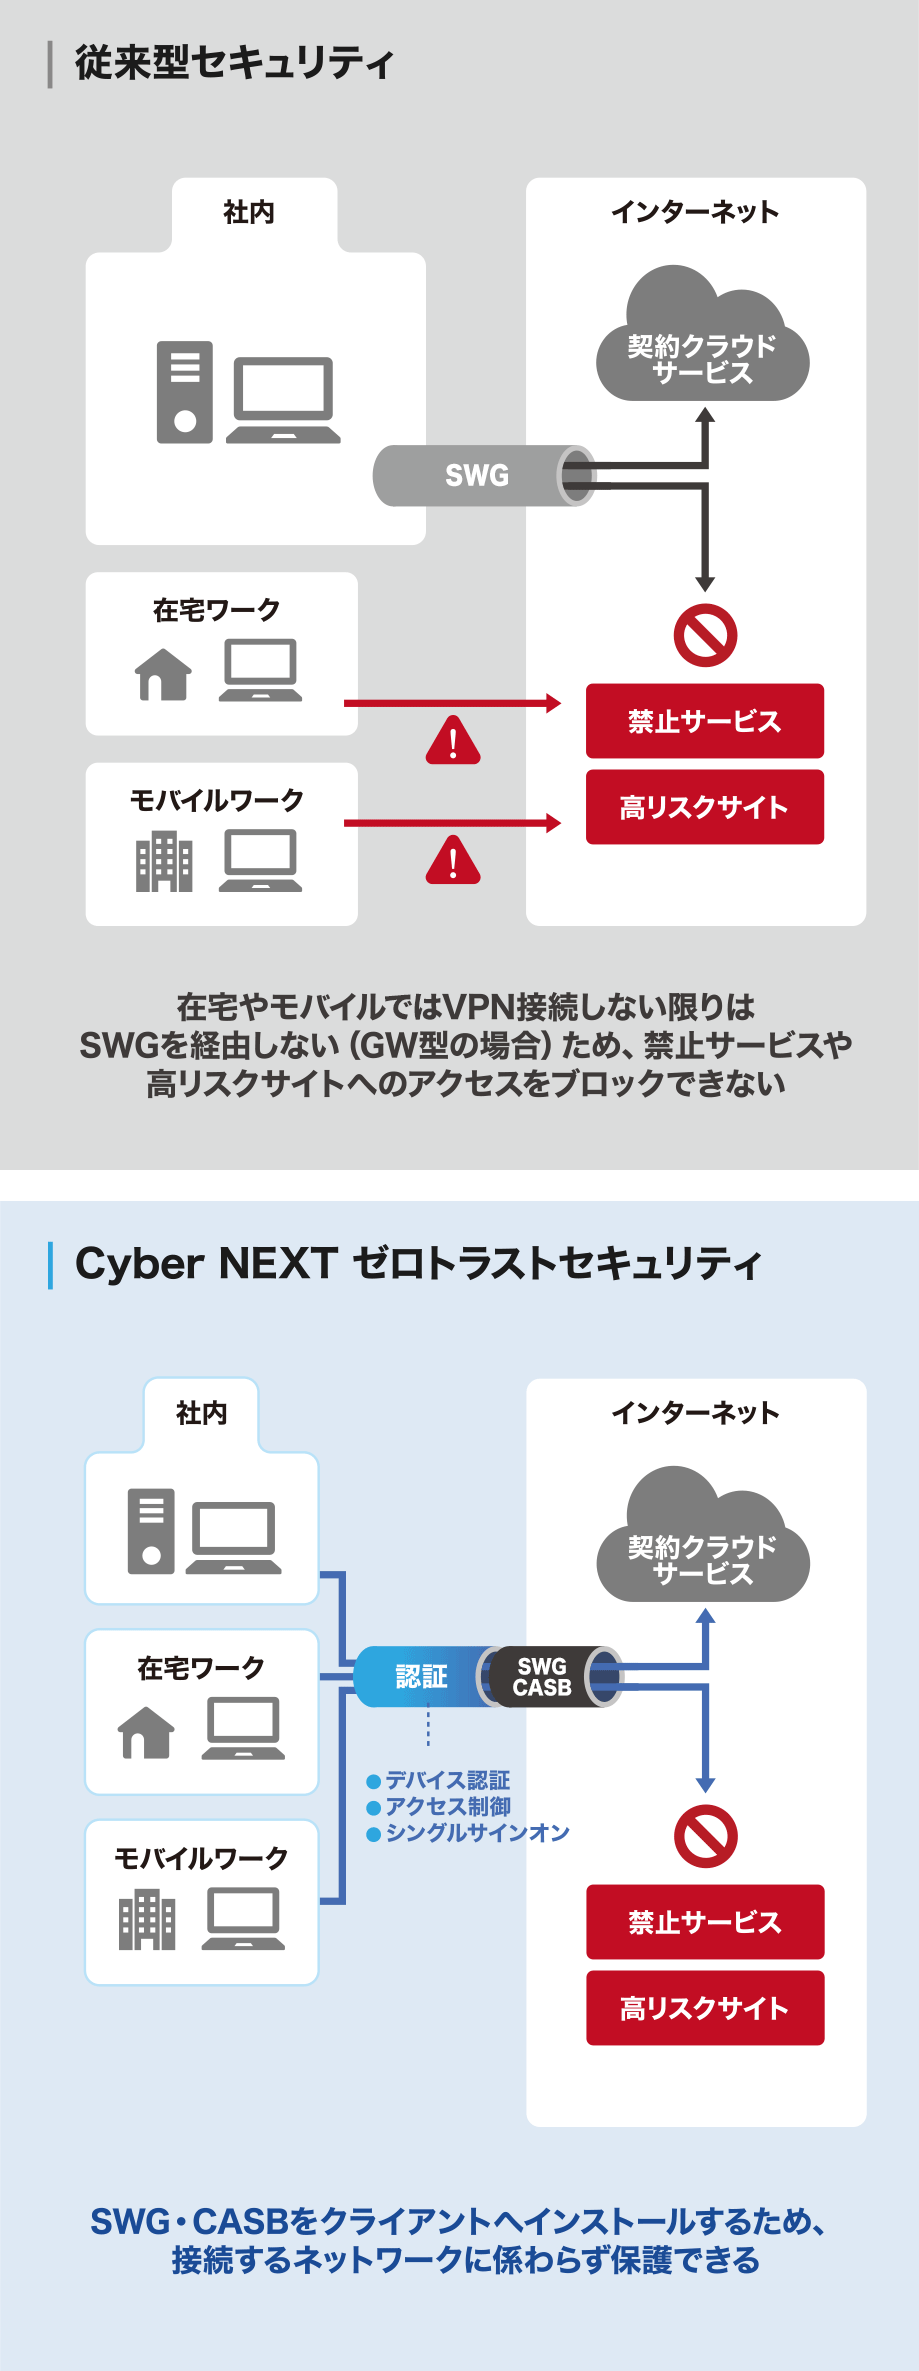 在宅やモバイルだとVPN接続しない限りはSWGを経由しない（GW型の場合）ため、禁止サービスや高リスクサイトへのアクセスをブロックできない。SWG・CASBをクライアントへインストールするため、接続するネットワークに係わらず保護できる。